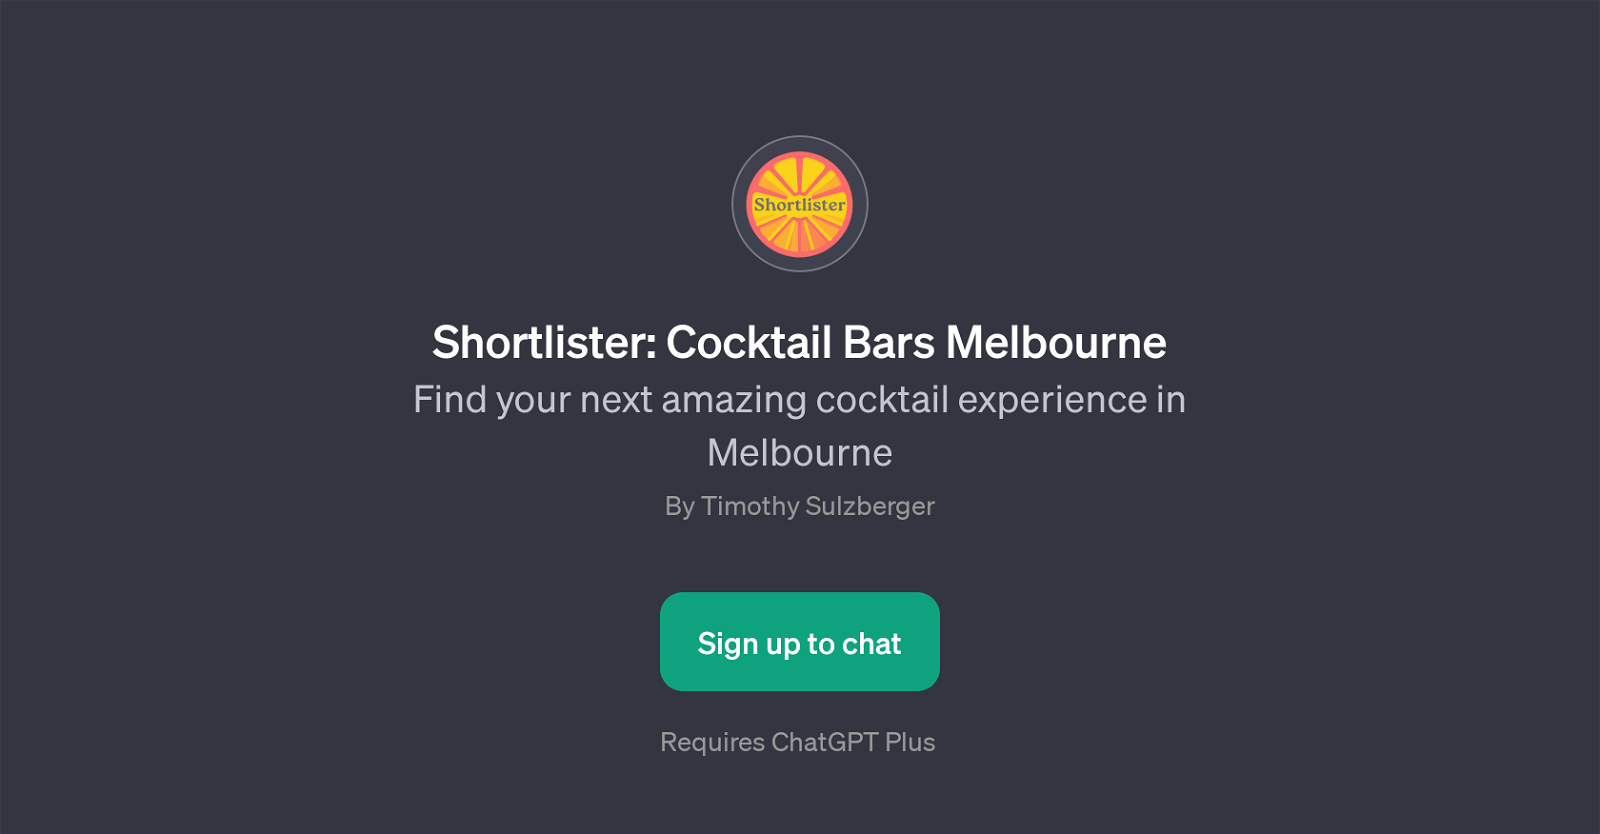 Shortlister: Cocktail Bars Melbourne website